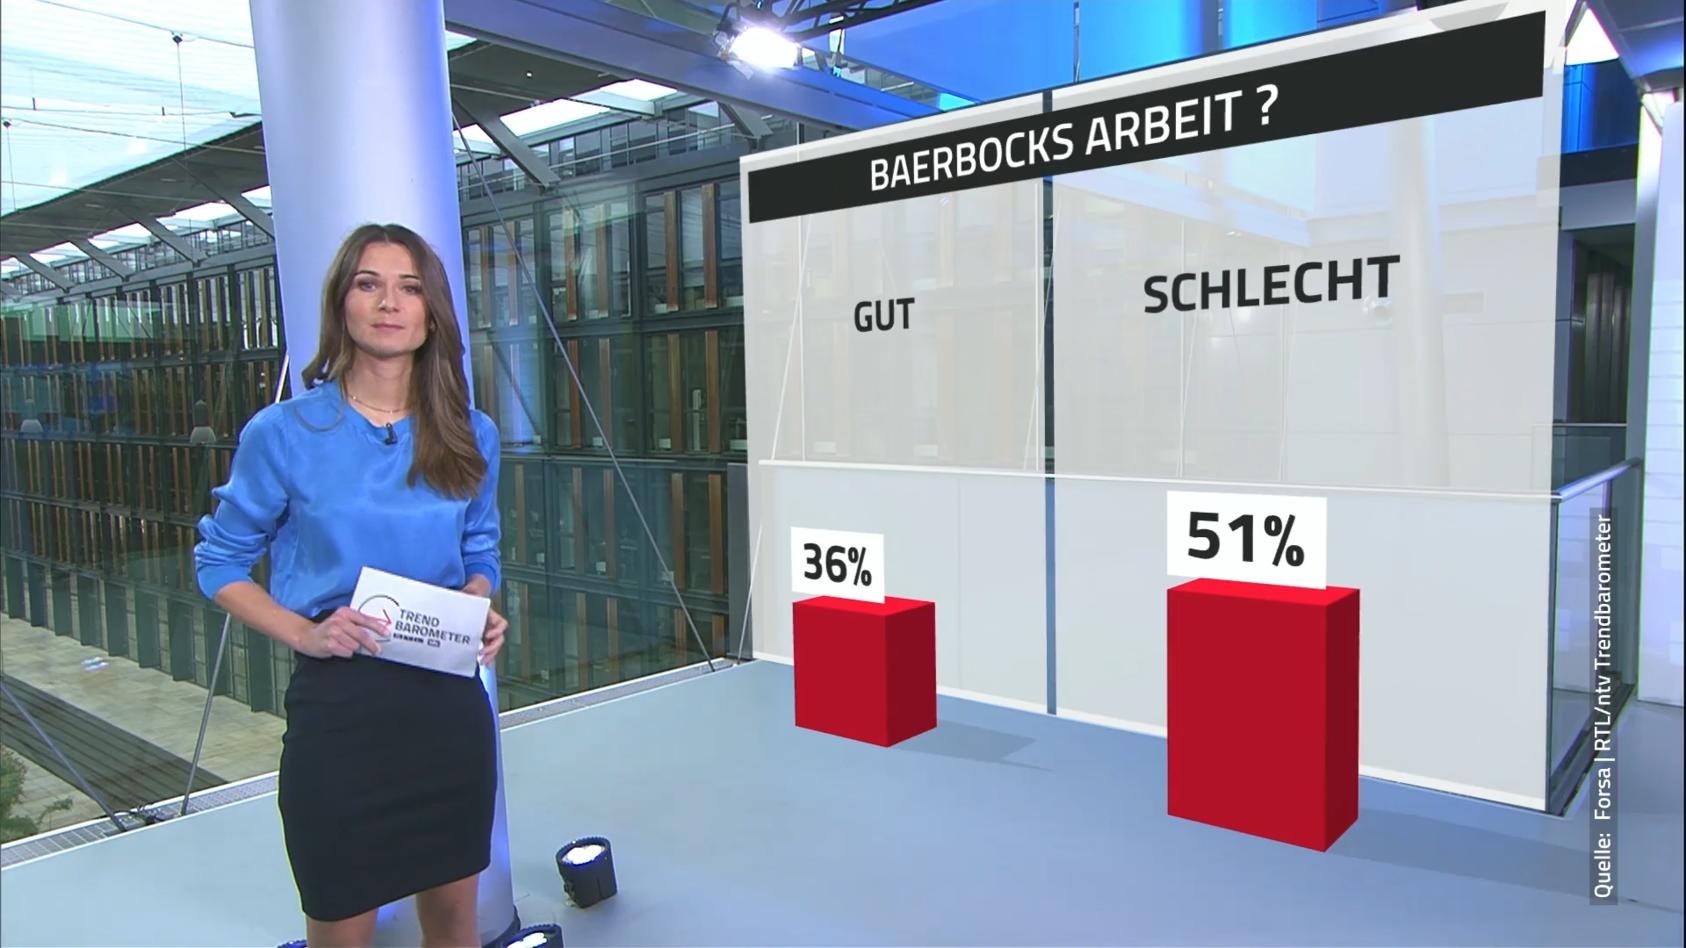 Mehrheit der Deutschen mit Baerbocks Arbeit unzufrieden RTL/ntv-Trendbarometer